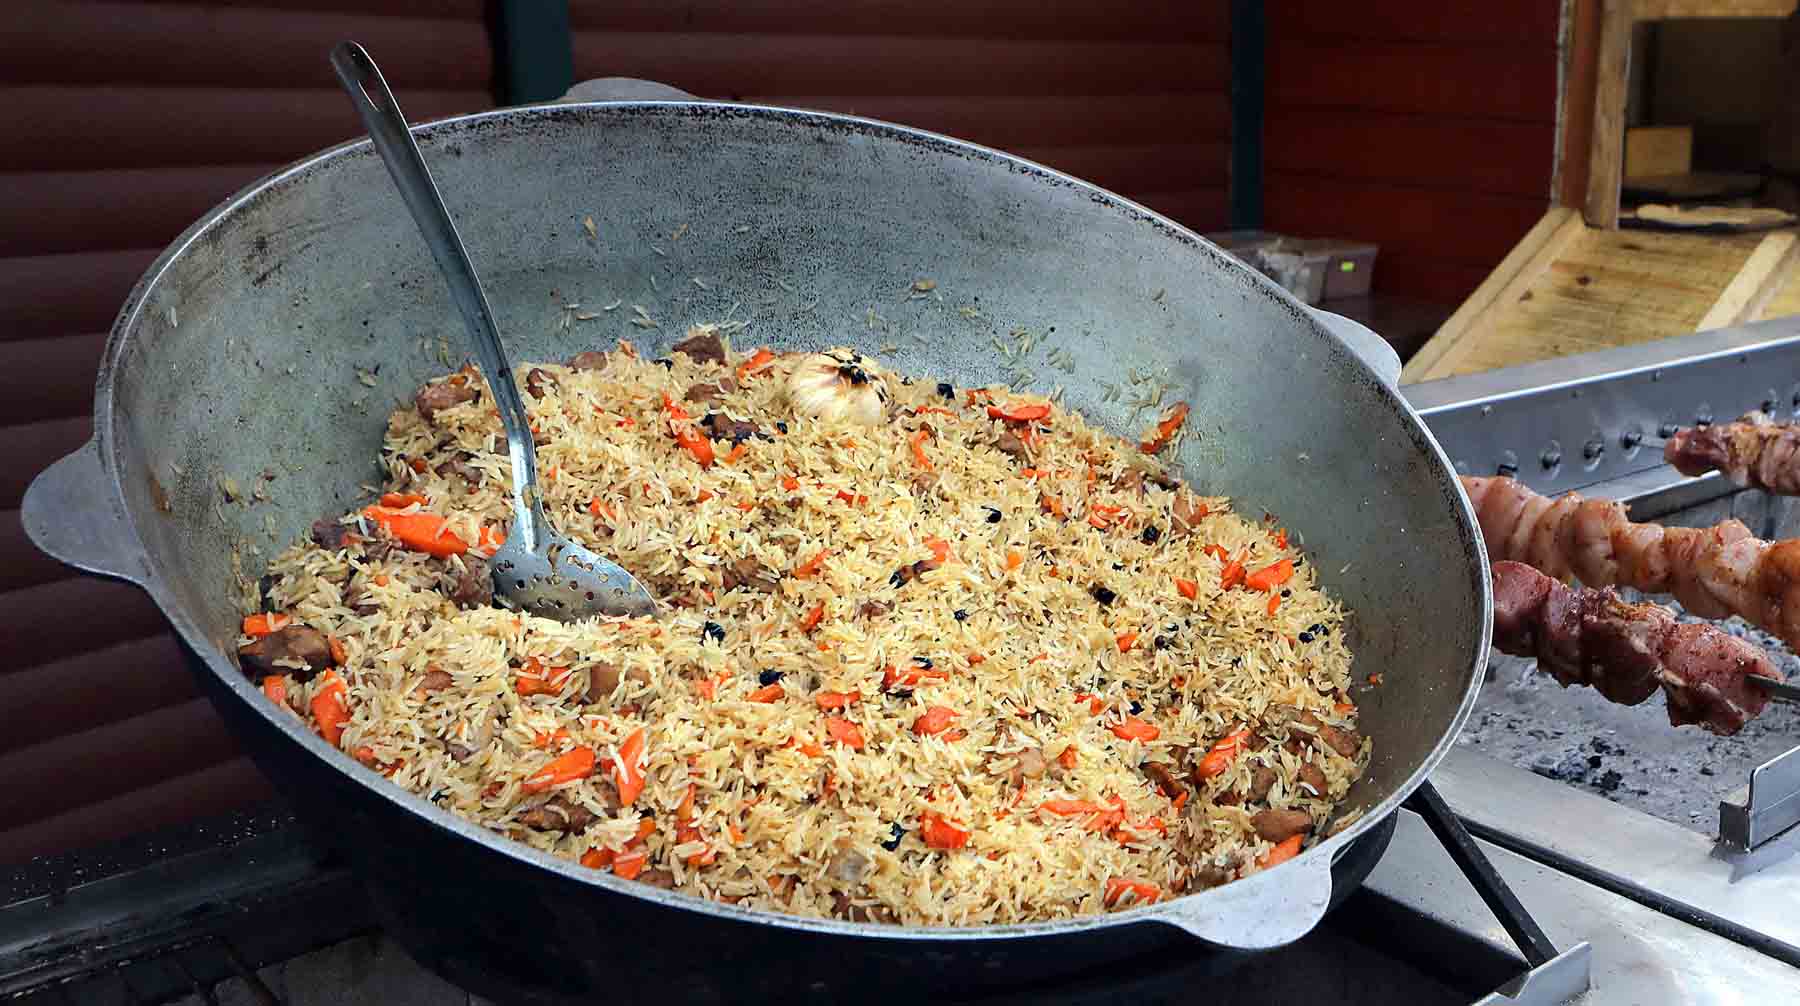 Для блюда восточной кухни потребуются говядина, курдючное сало, рис, лук с морковкой и специи Фото: © Global Look Press / Юлия Овсянникова